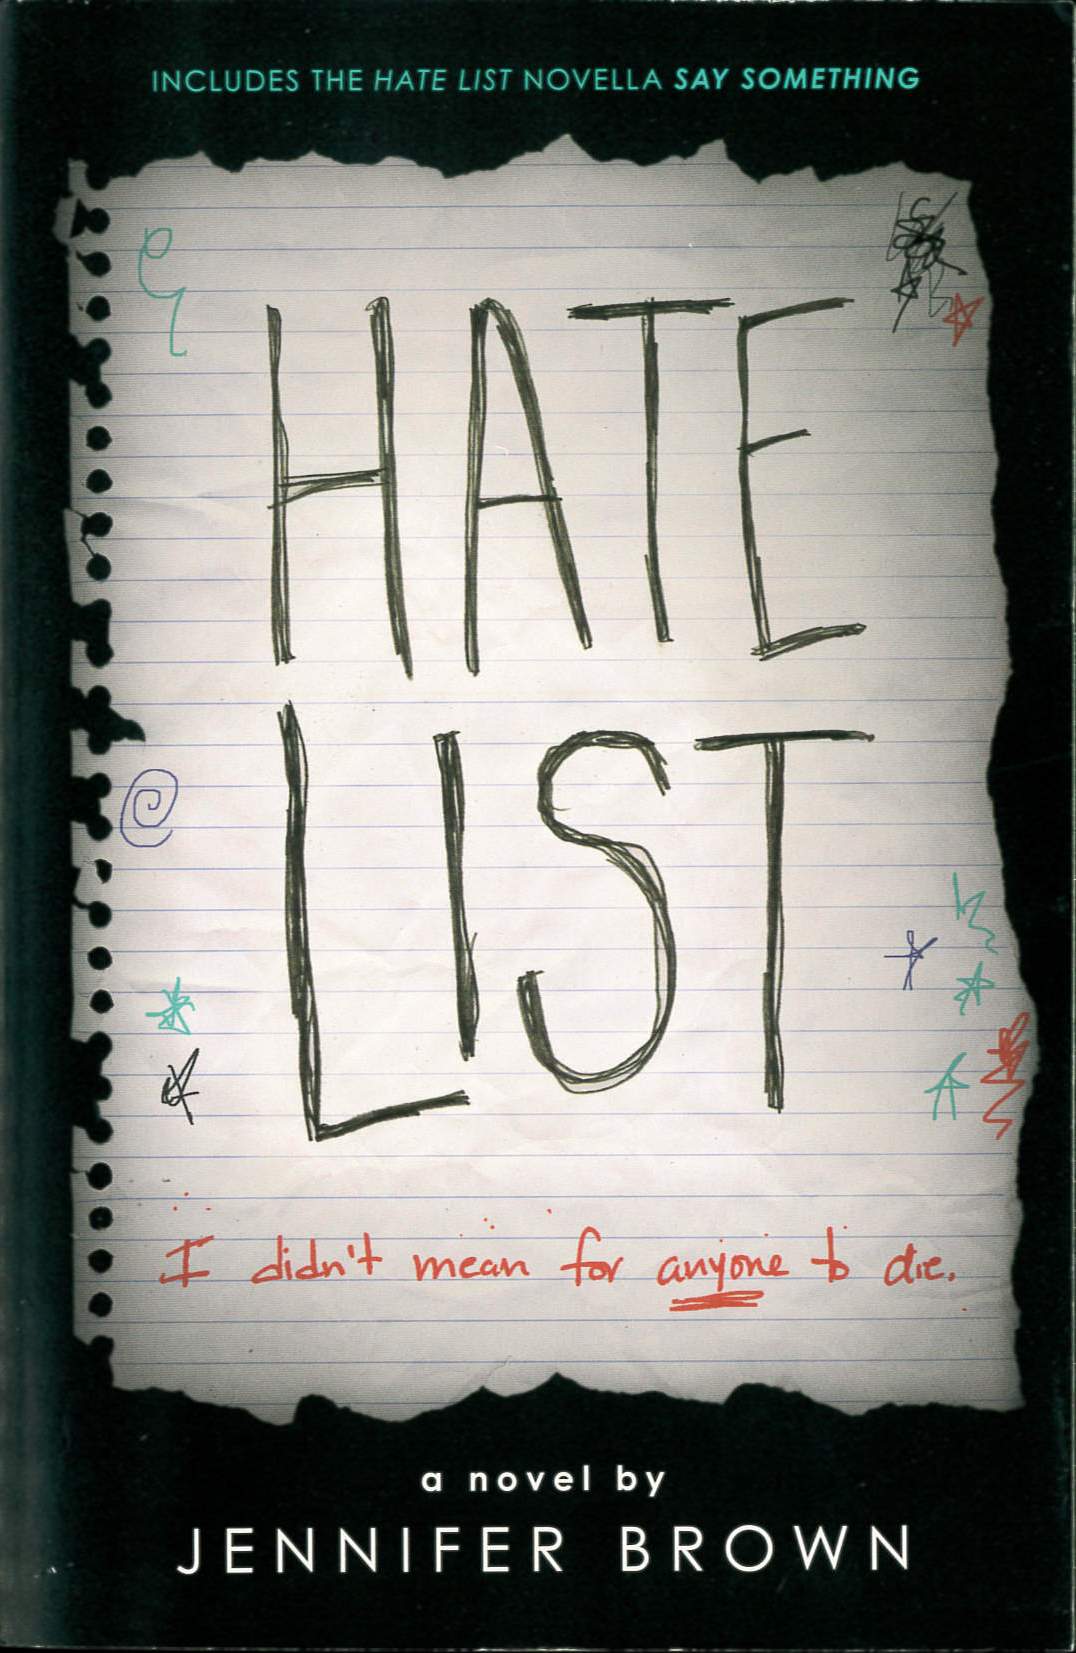 Hate list /